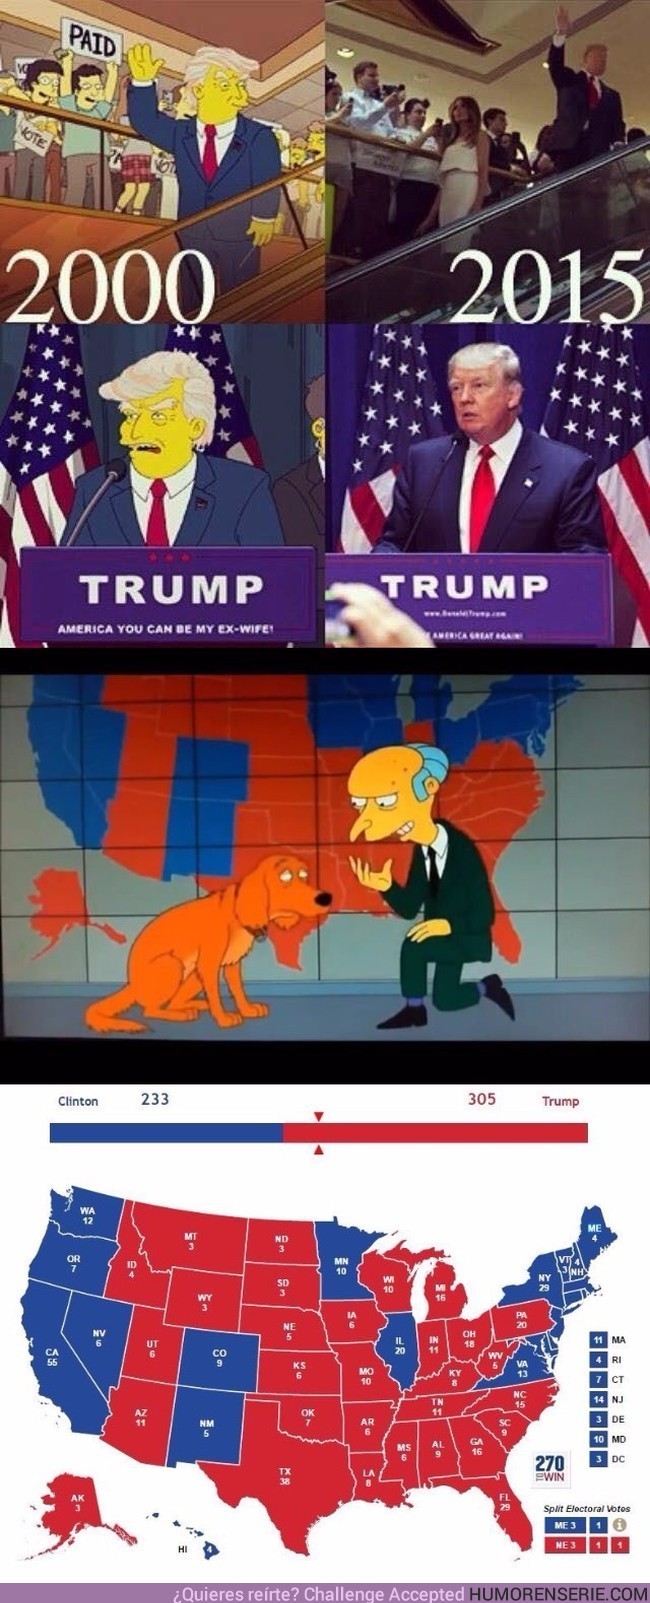 7027 - Los Simpson no solo acertaron que Trump sería presidente. También clavaron el mapa electoral